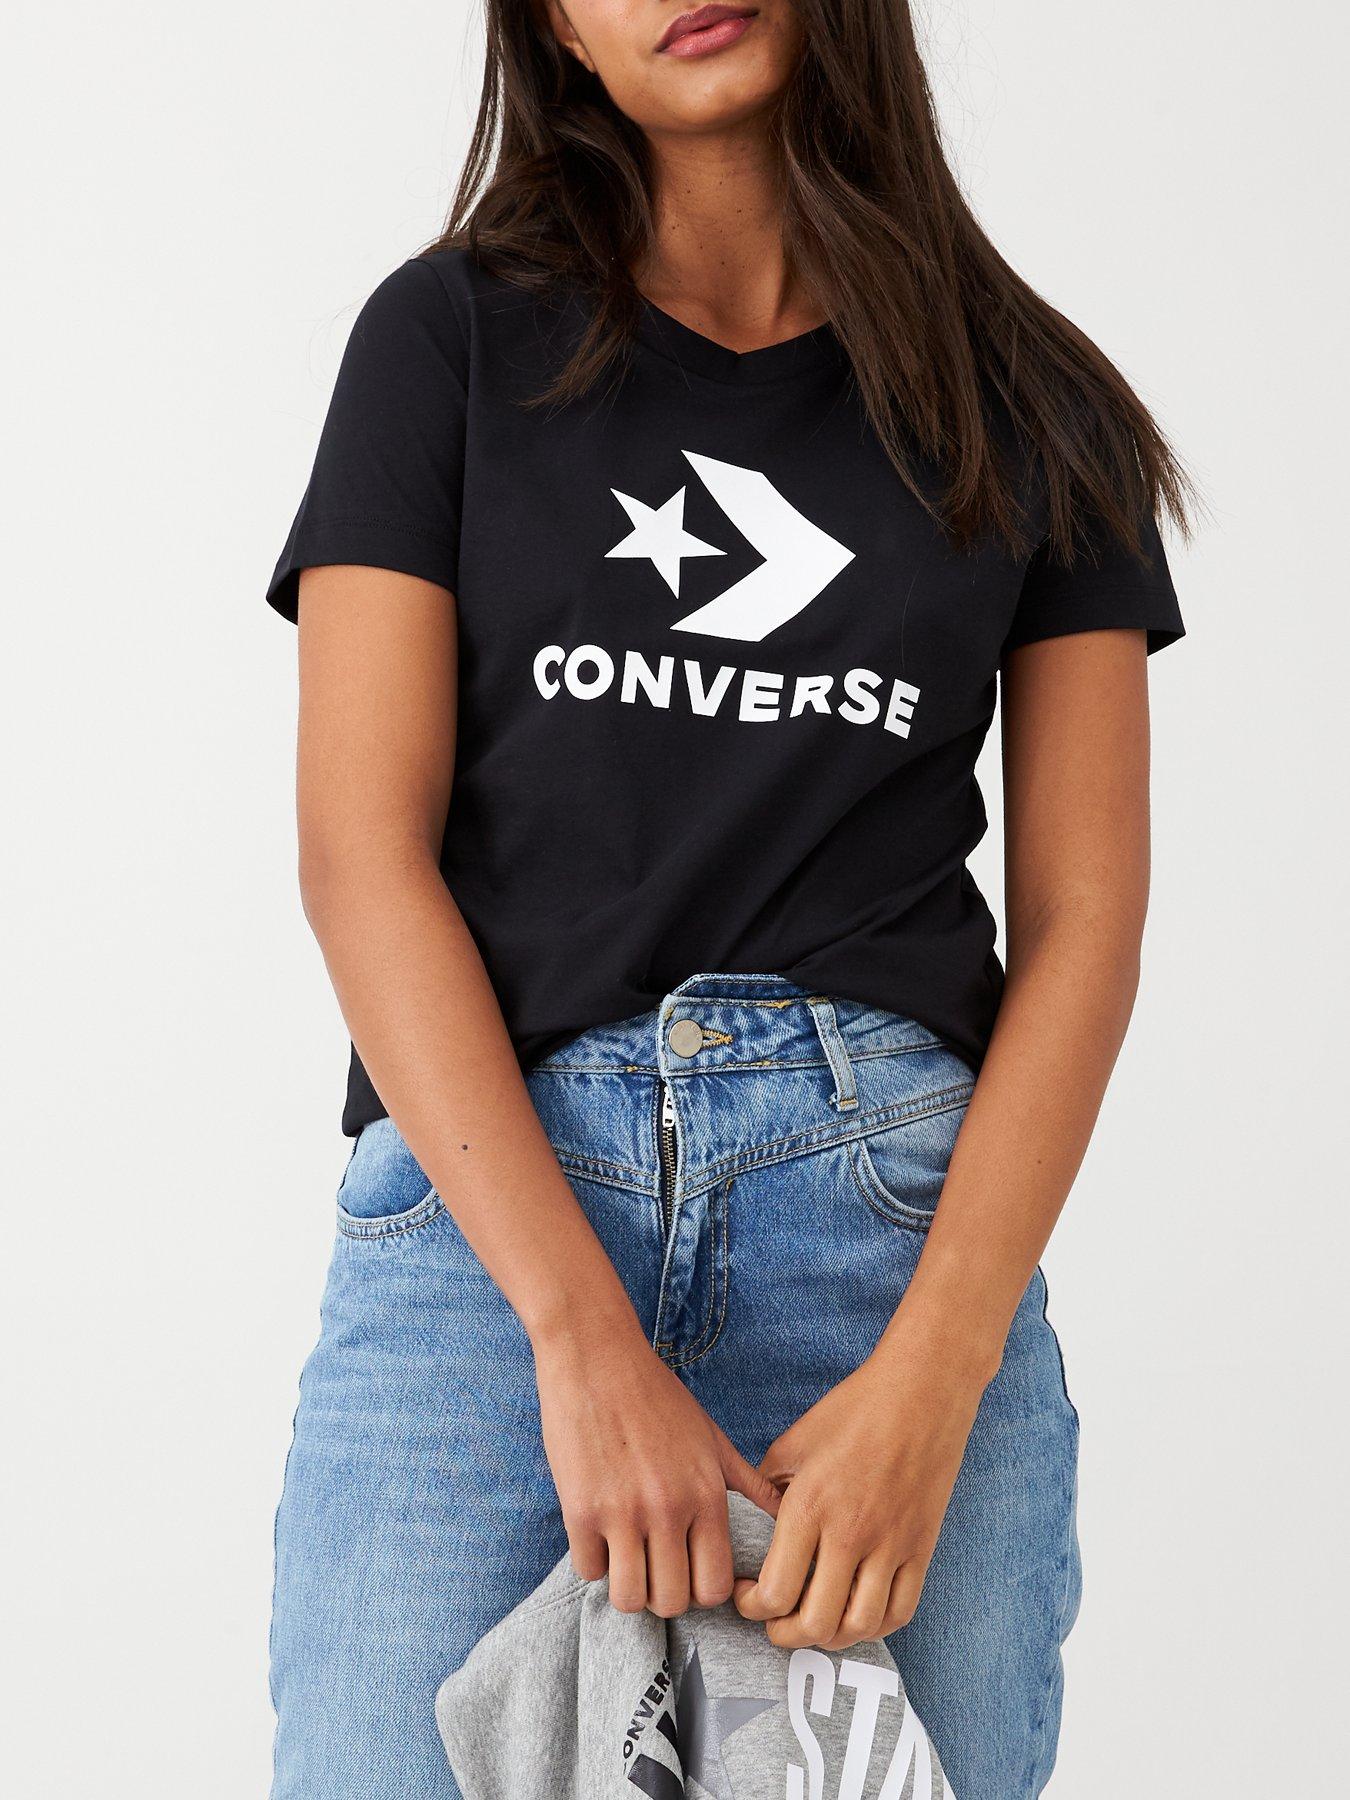 converse t shirt women